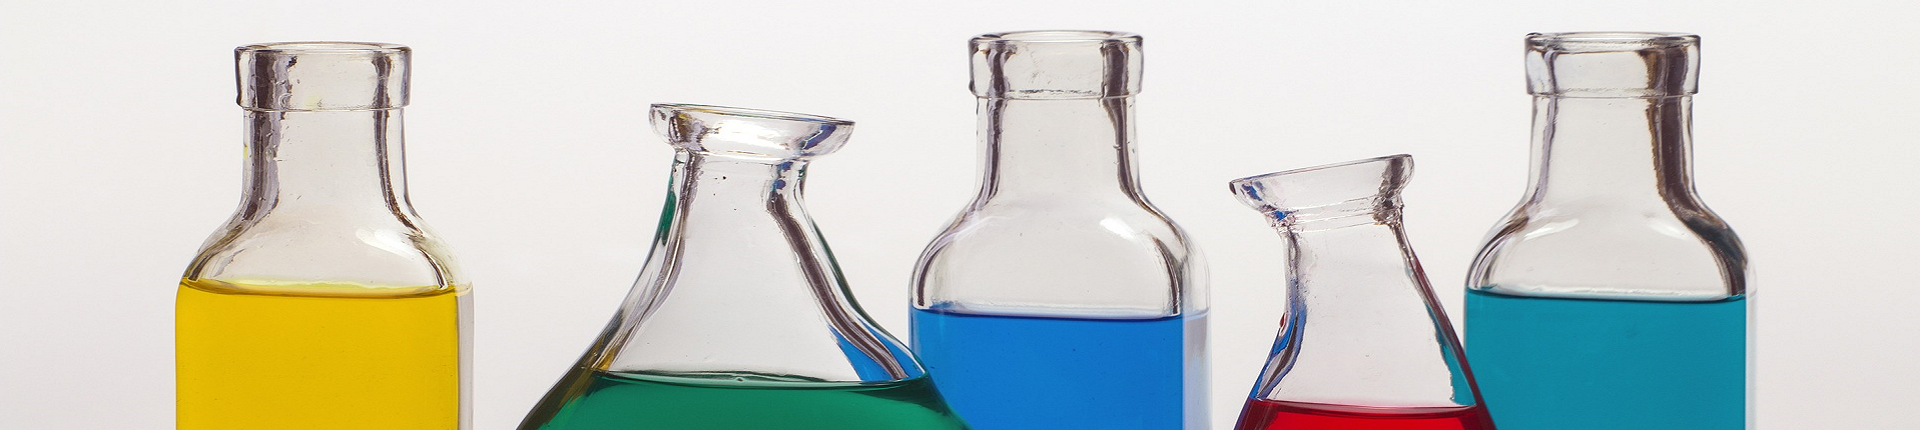 fünf Glasflaschen mit bunten Flüssigkeiten gefüllt